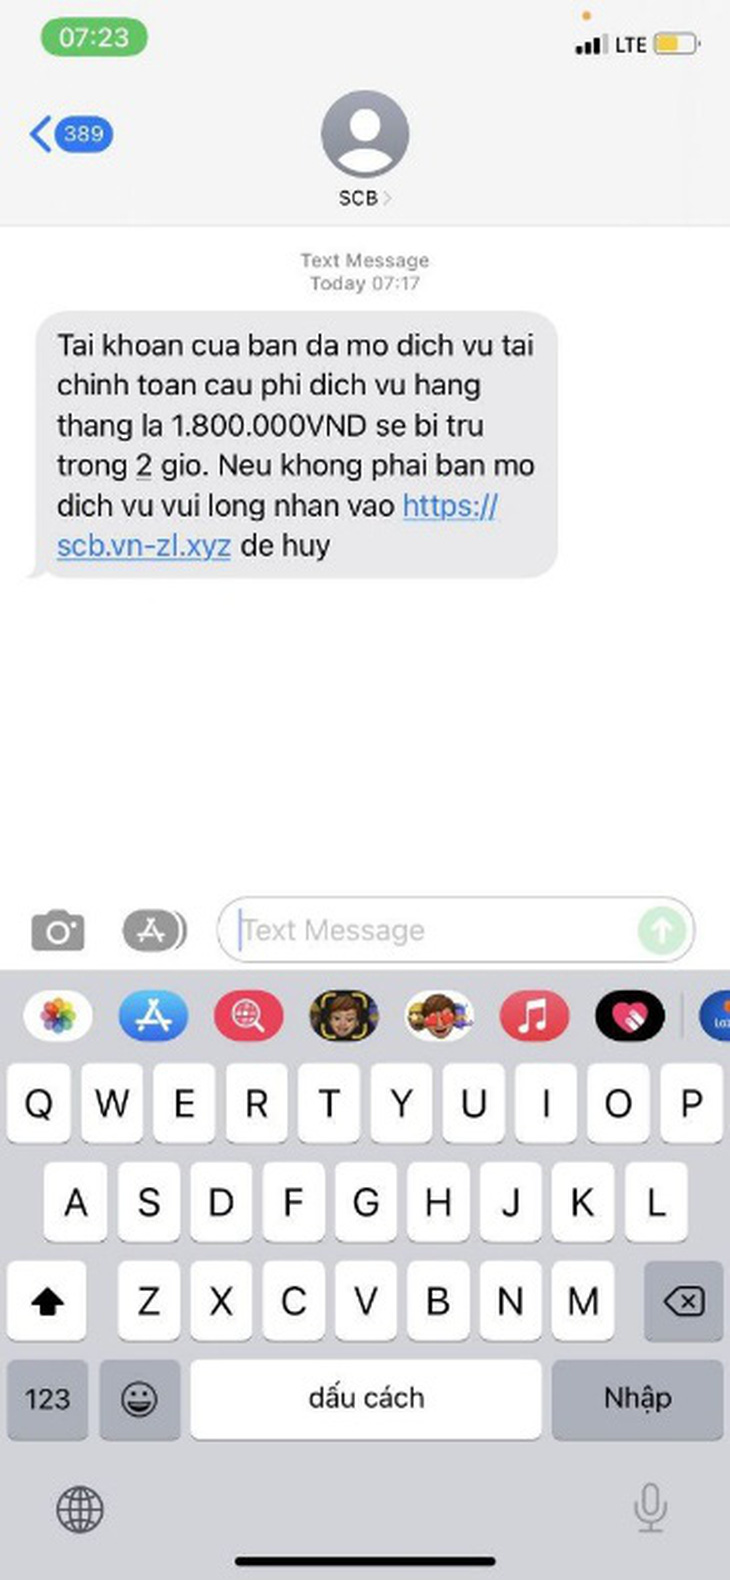 Ngân hàng Sài Gòn cảnh báo lừa đảo qua tin nhắn giả mạo - Ảnh 2.